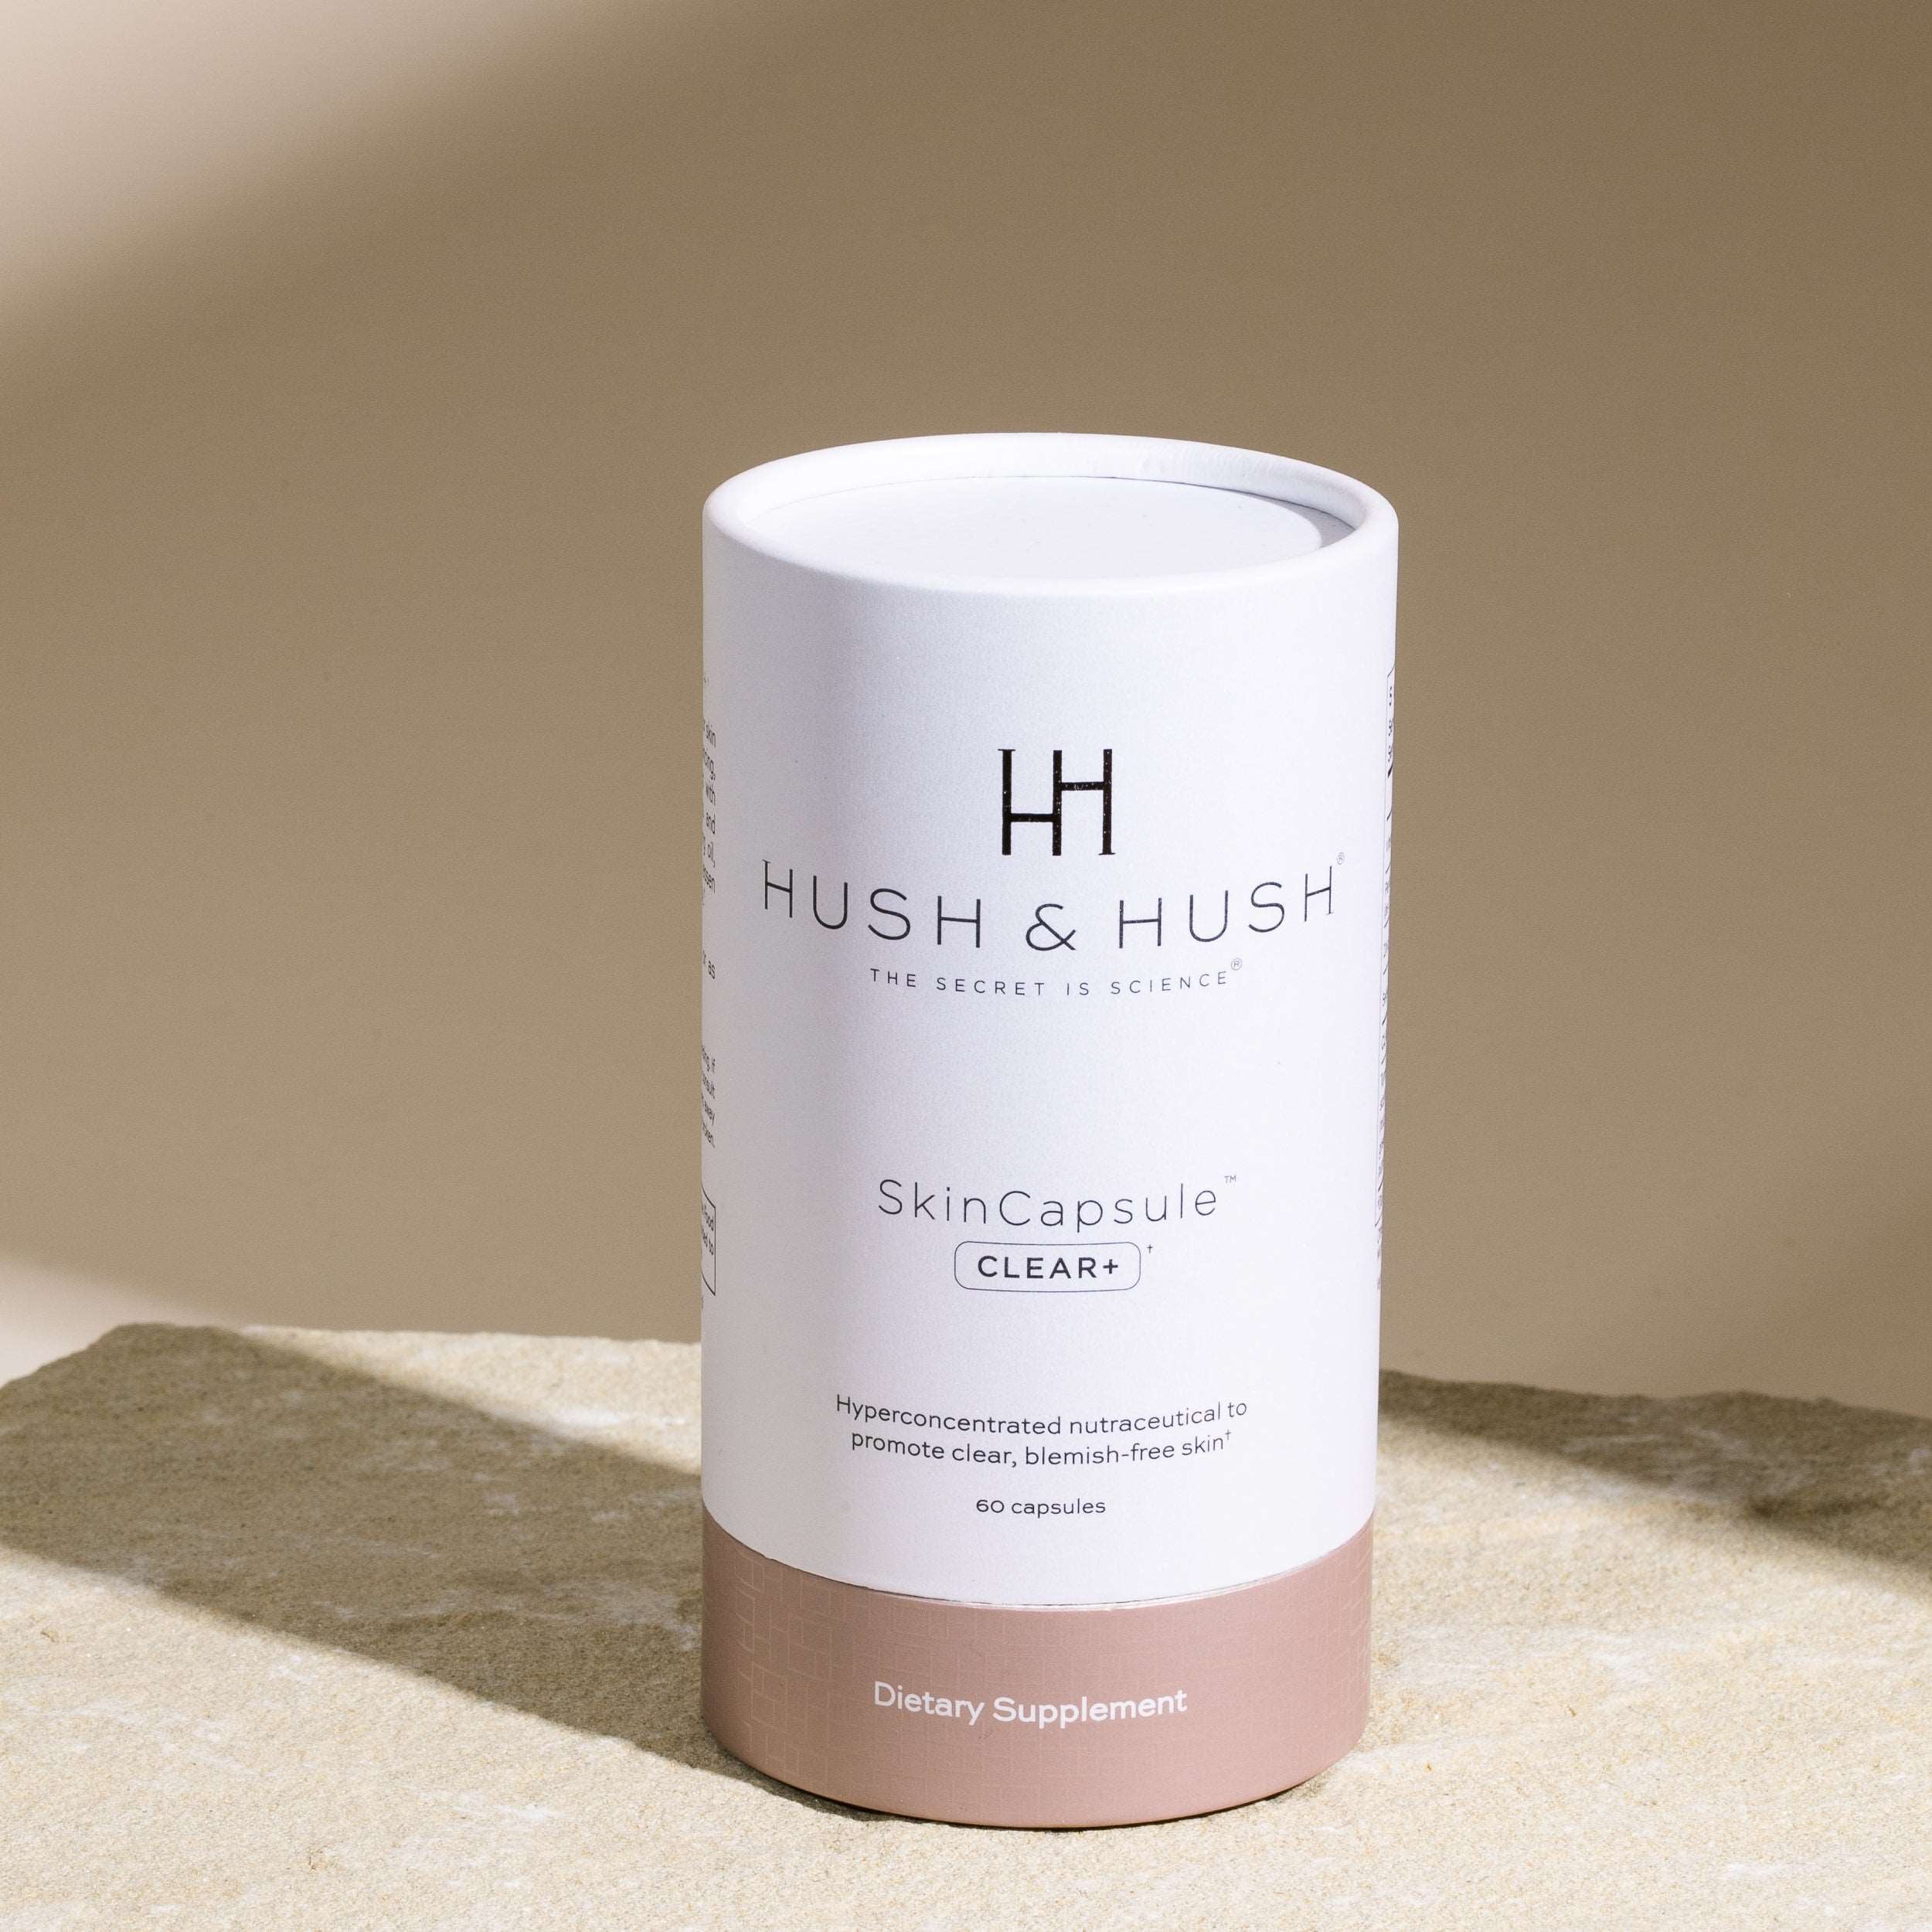 Hush & Hush Skin Capsule CLEAR+ Hush & Hush